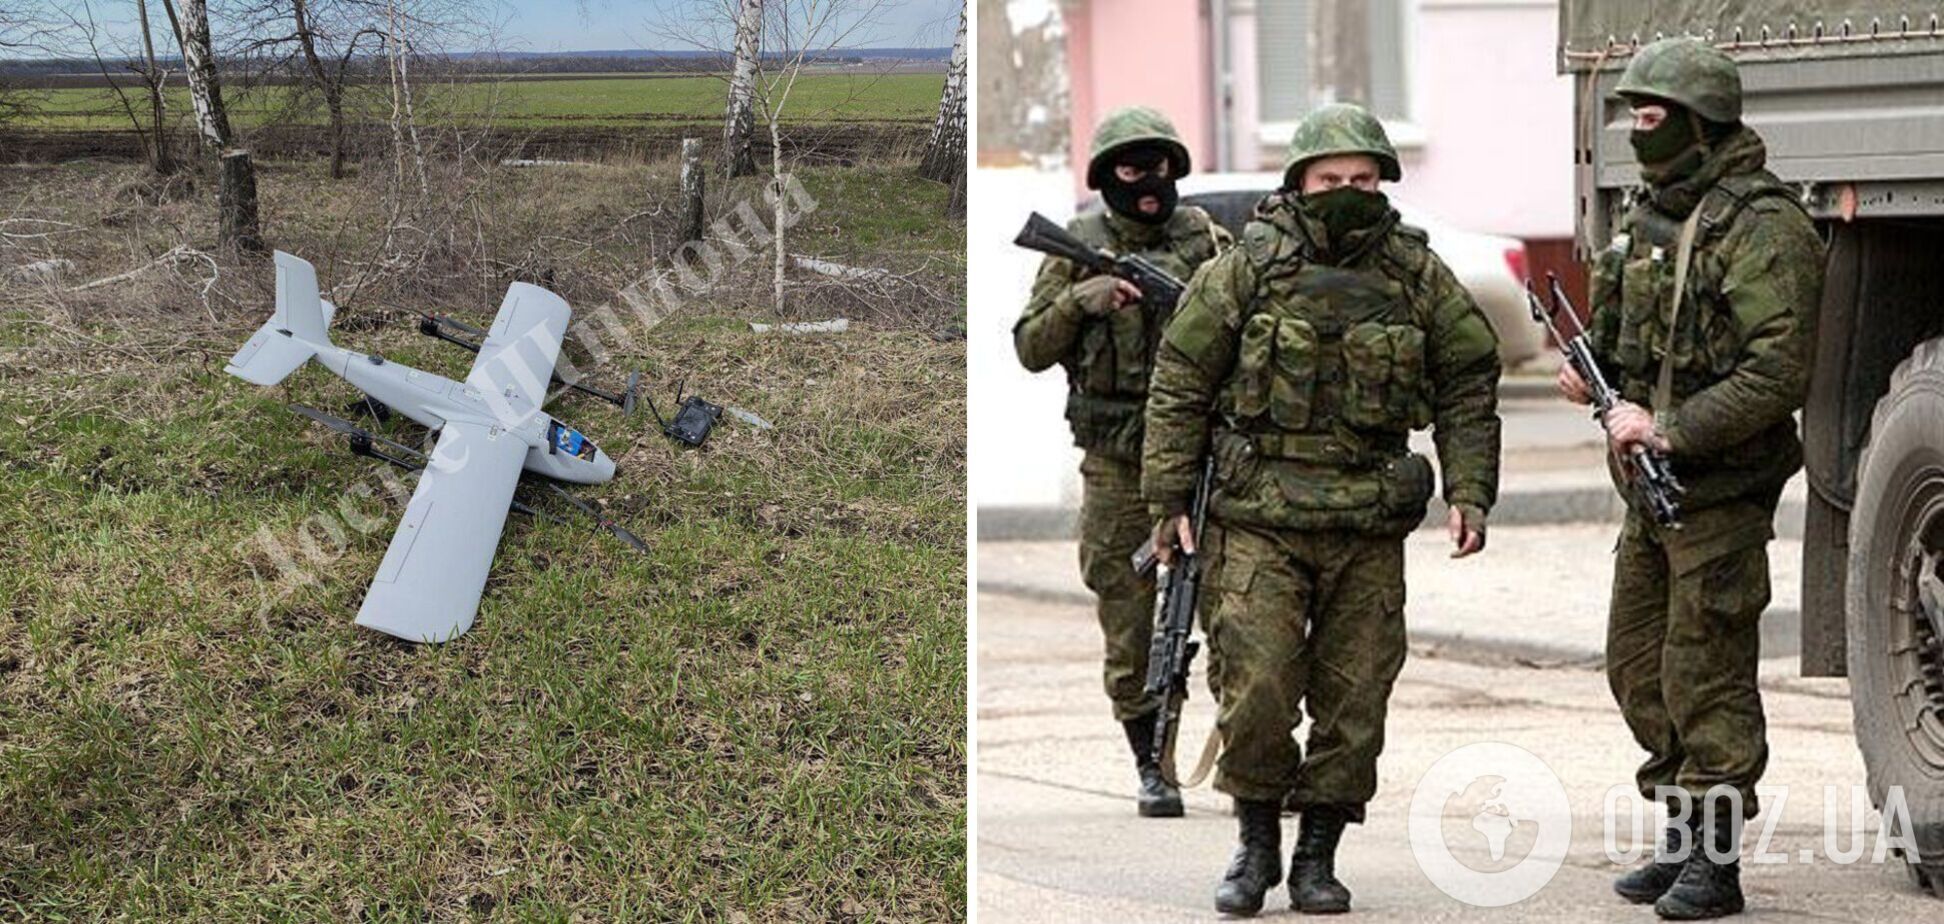 Белгородские военные сбили 'вражеский' дрон: теперь ФСБ требует с них компенсацию в 3 млн рублей. Фото